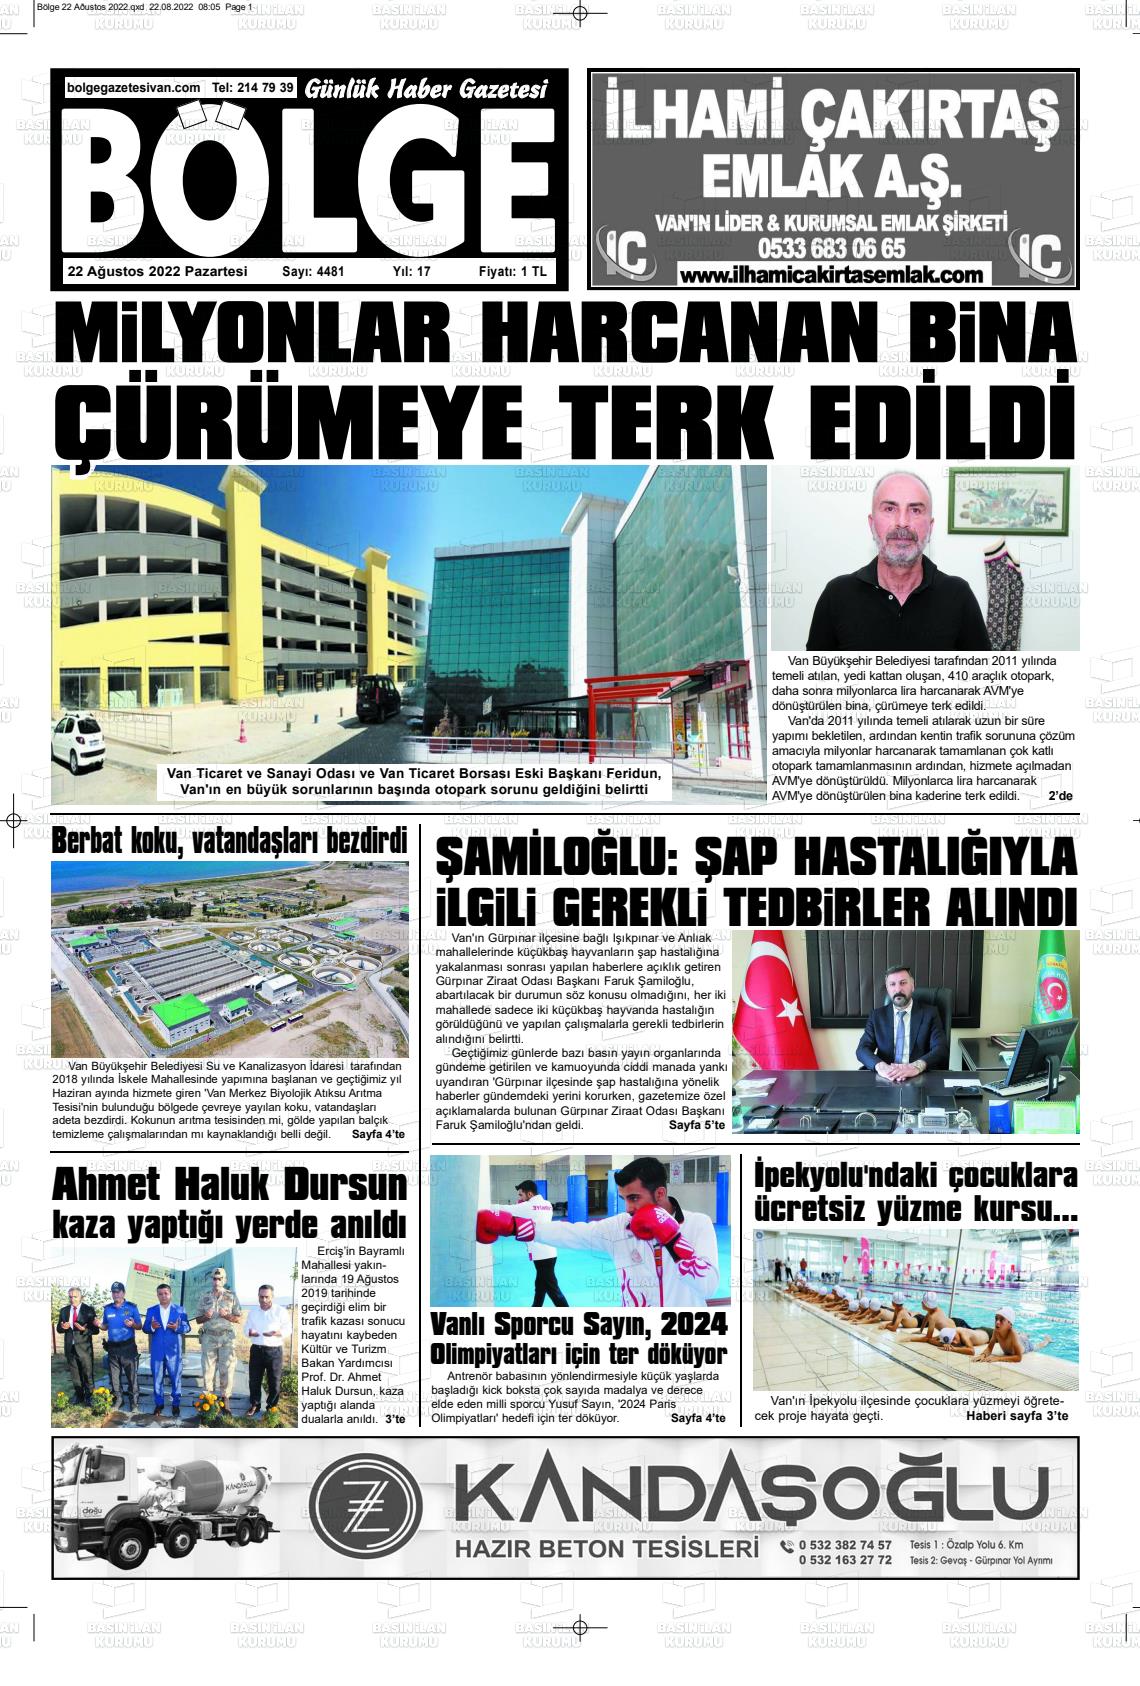 22 Ağustos 2022 Bölge  Silvan Gazete Manşeti